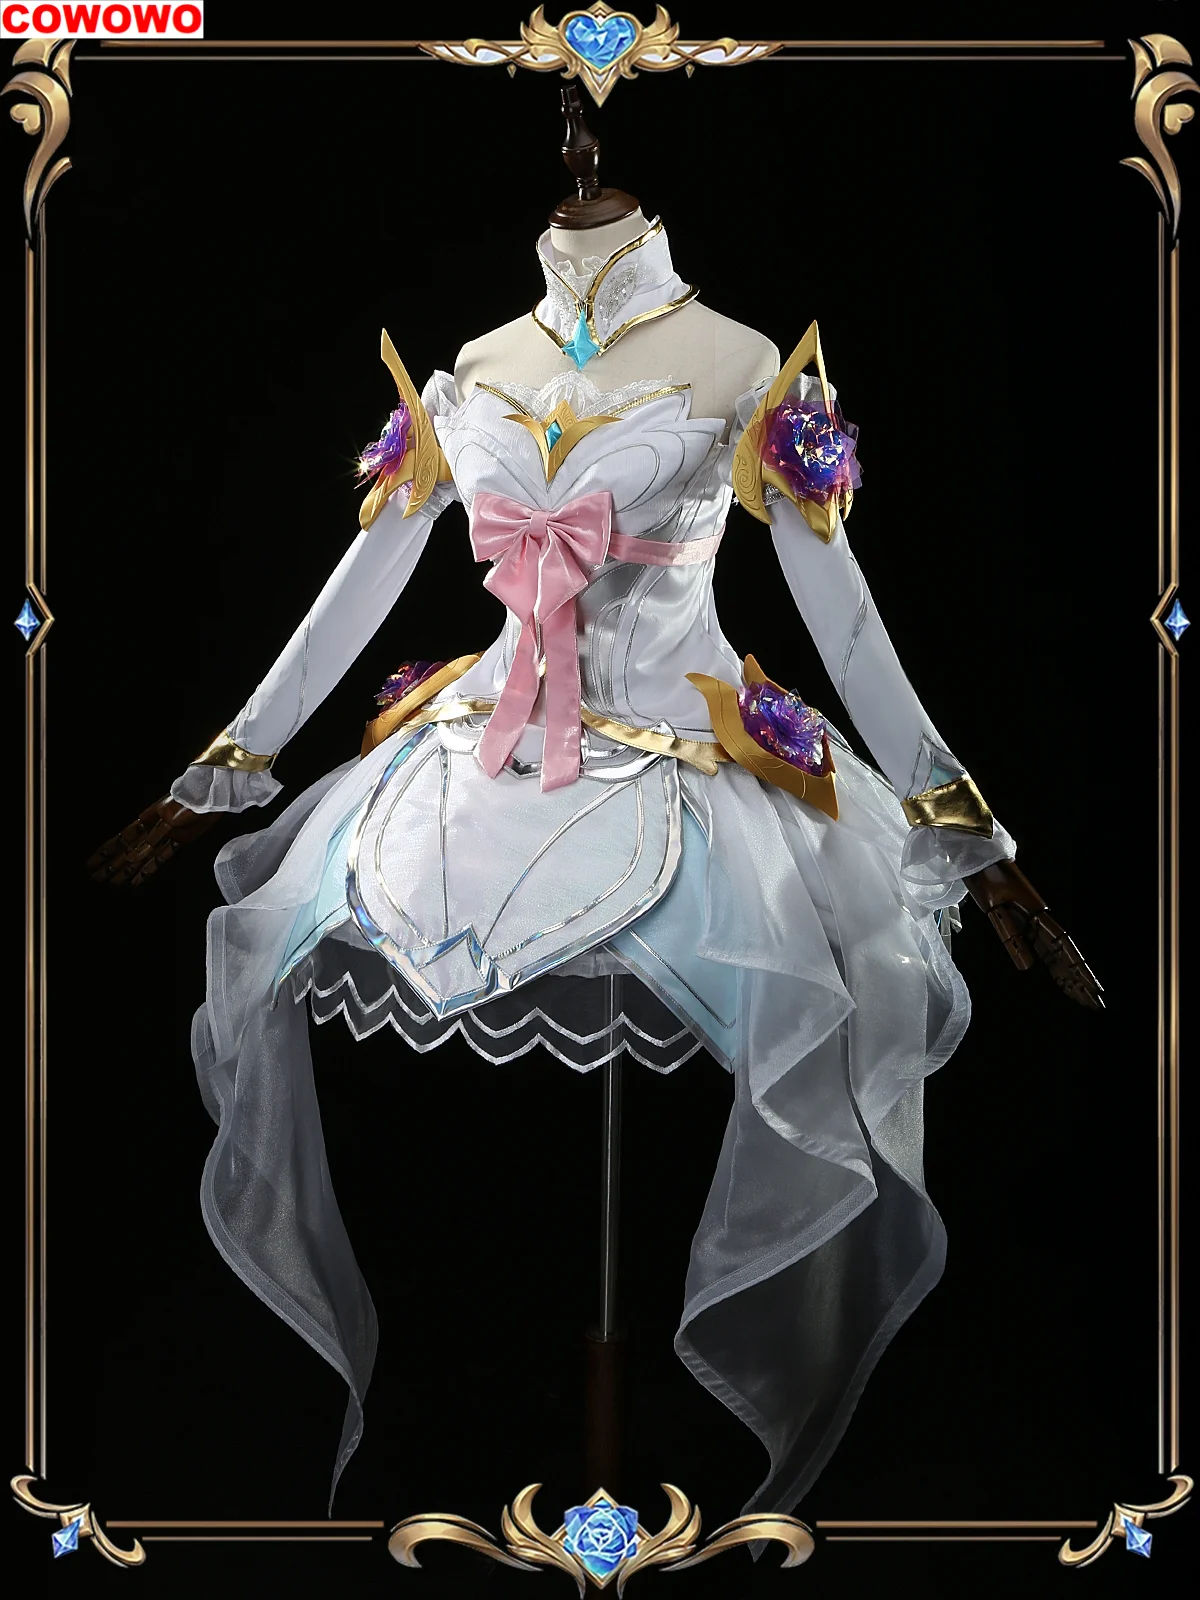 

Женское платье для косплея COWOWO Lol Seraphine, костюм для косплея, униформа для игры в искусственном стиле, одежда для ролевых игр